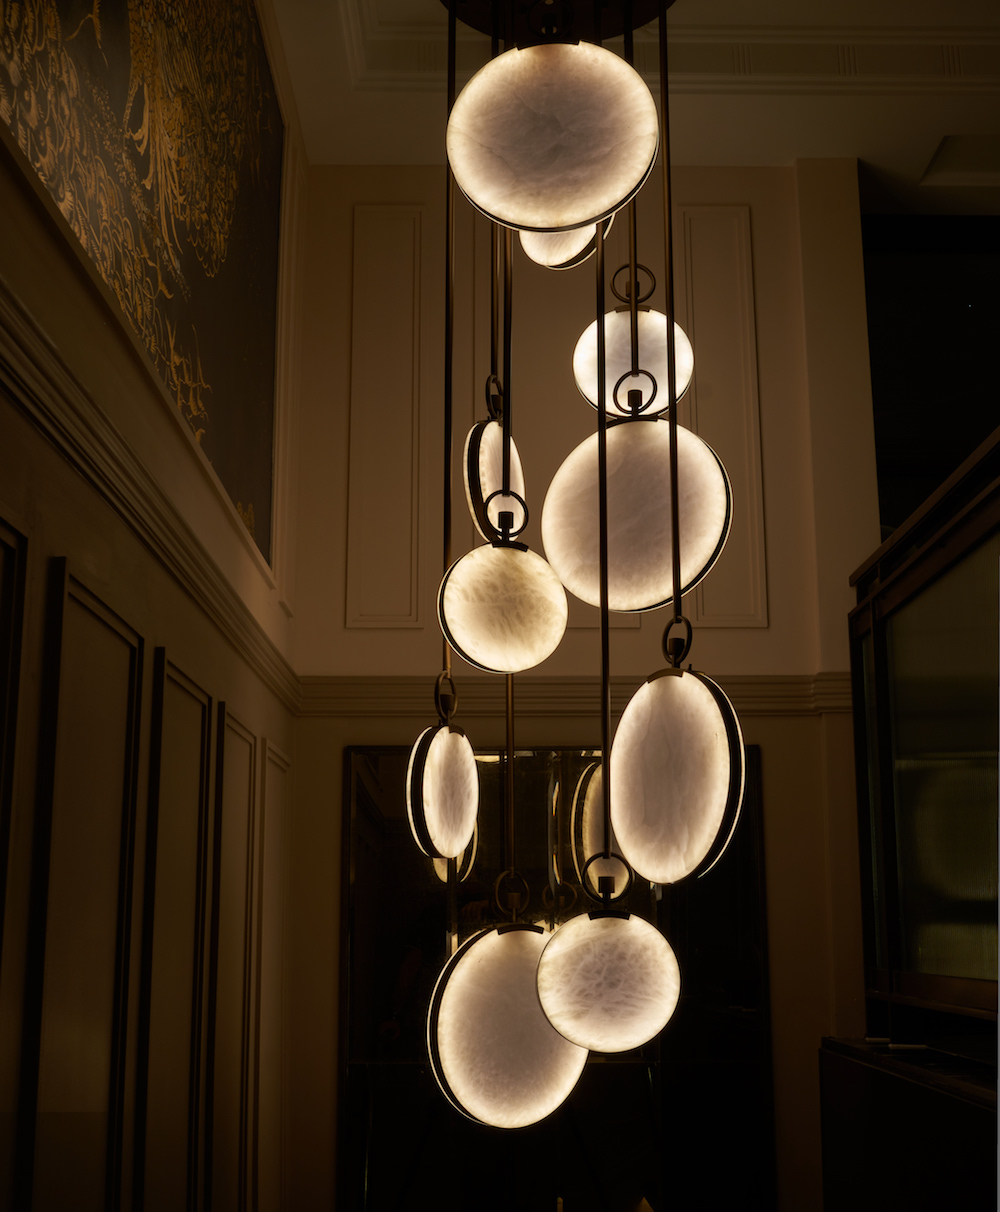 A cascading chandelier inside a luxury hotel in London